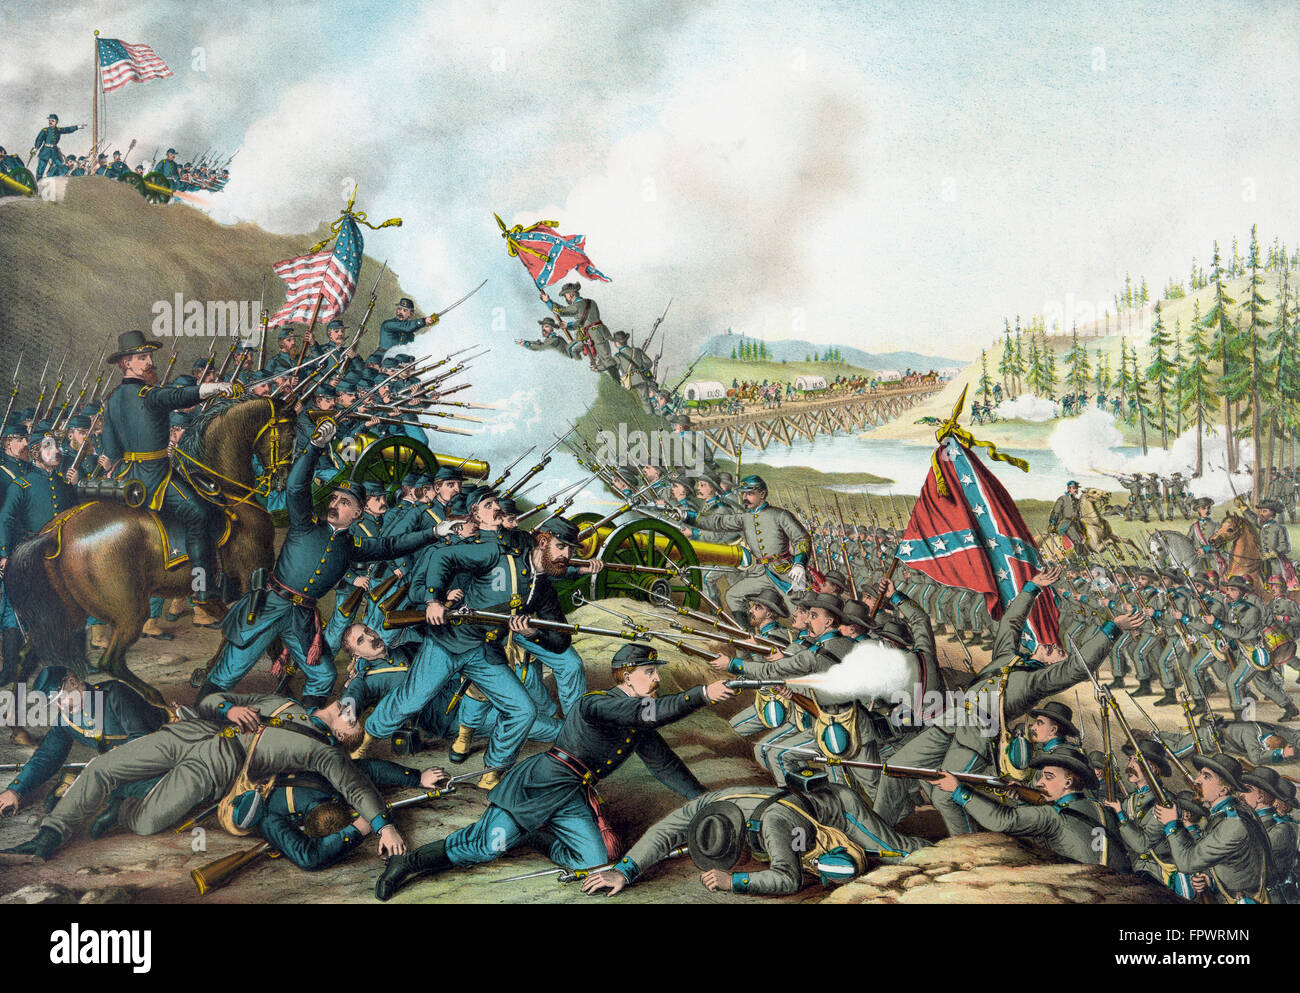 Guerre civile Vintage print de la bataille de Franklin. La bataille fut livrée le 30 novembre 1864, à Franklin, Tennessee, dans le cadre o Banque D'Images